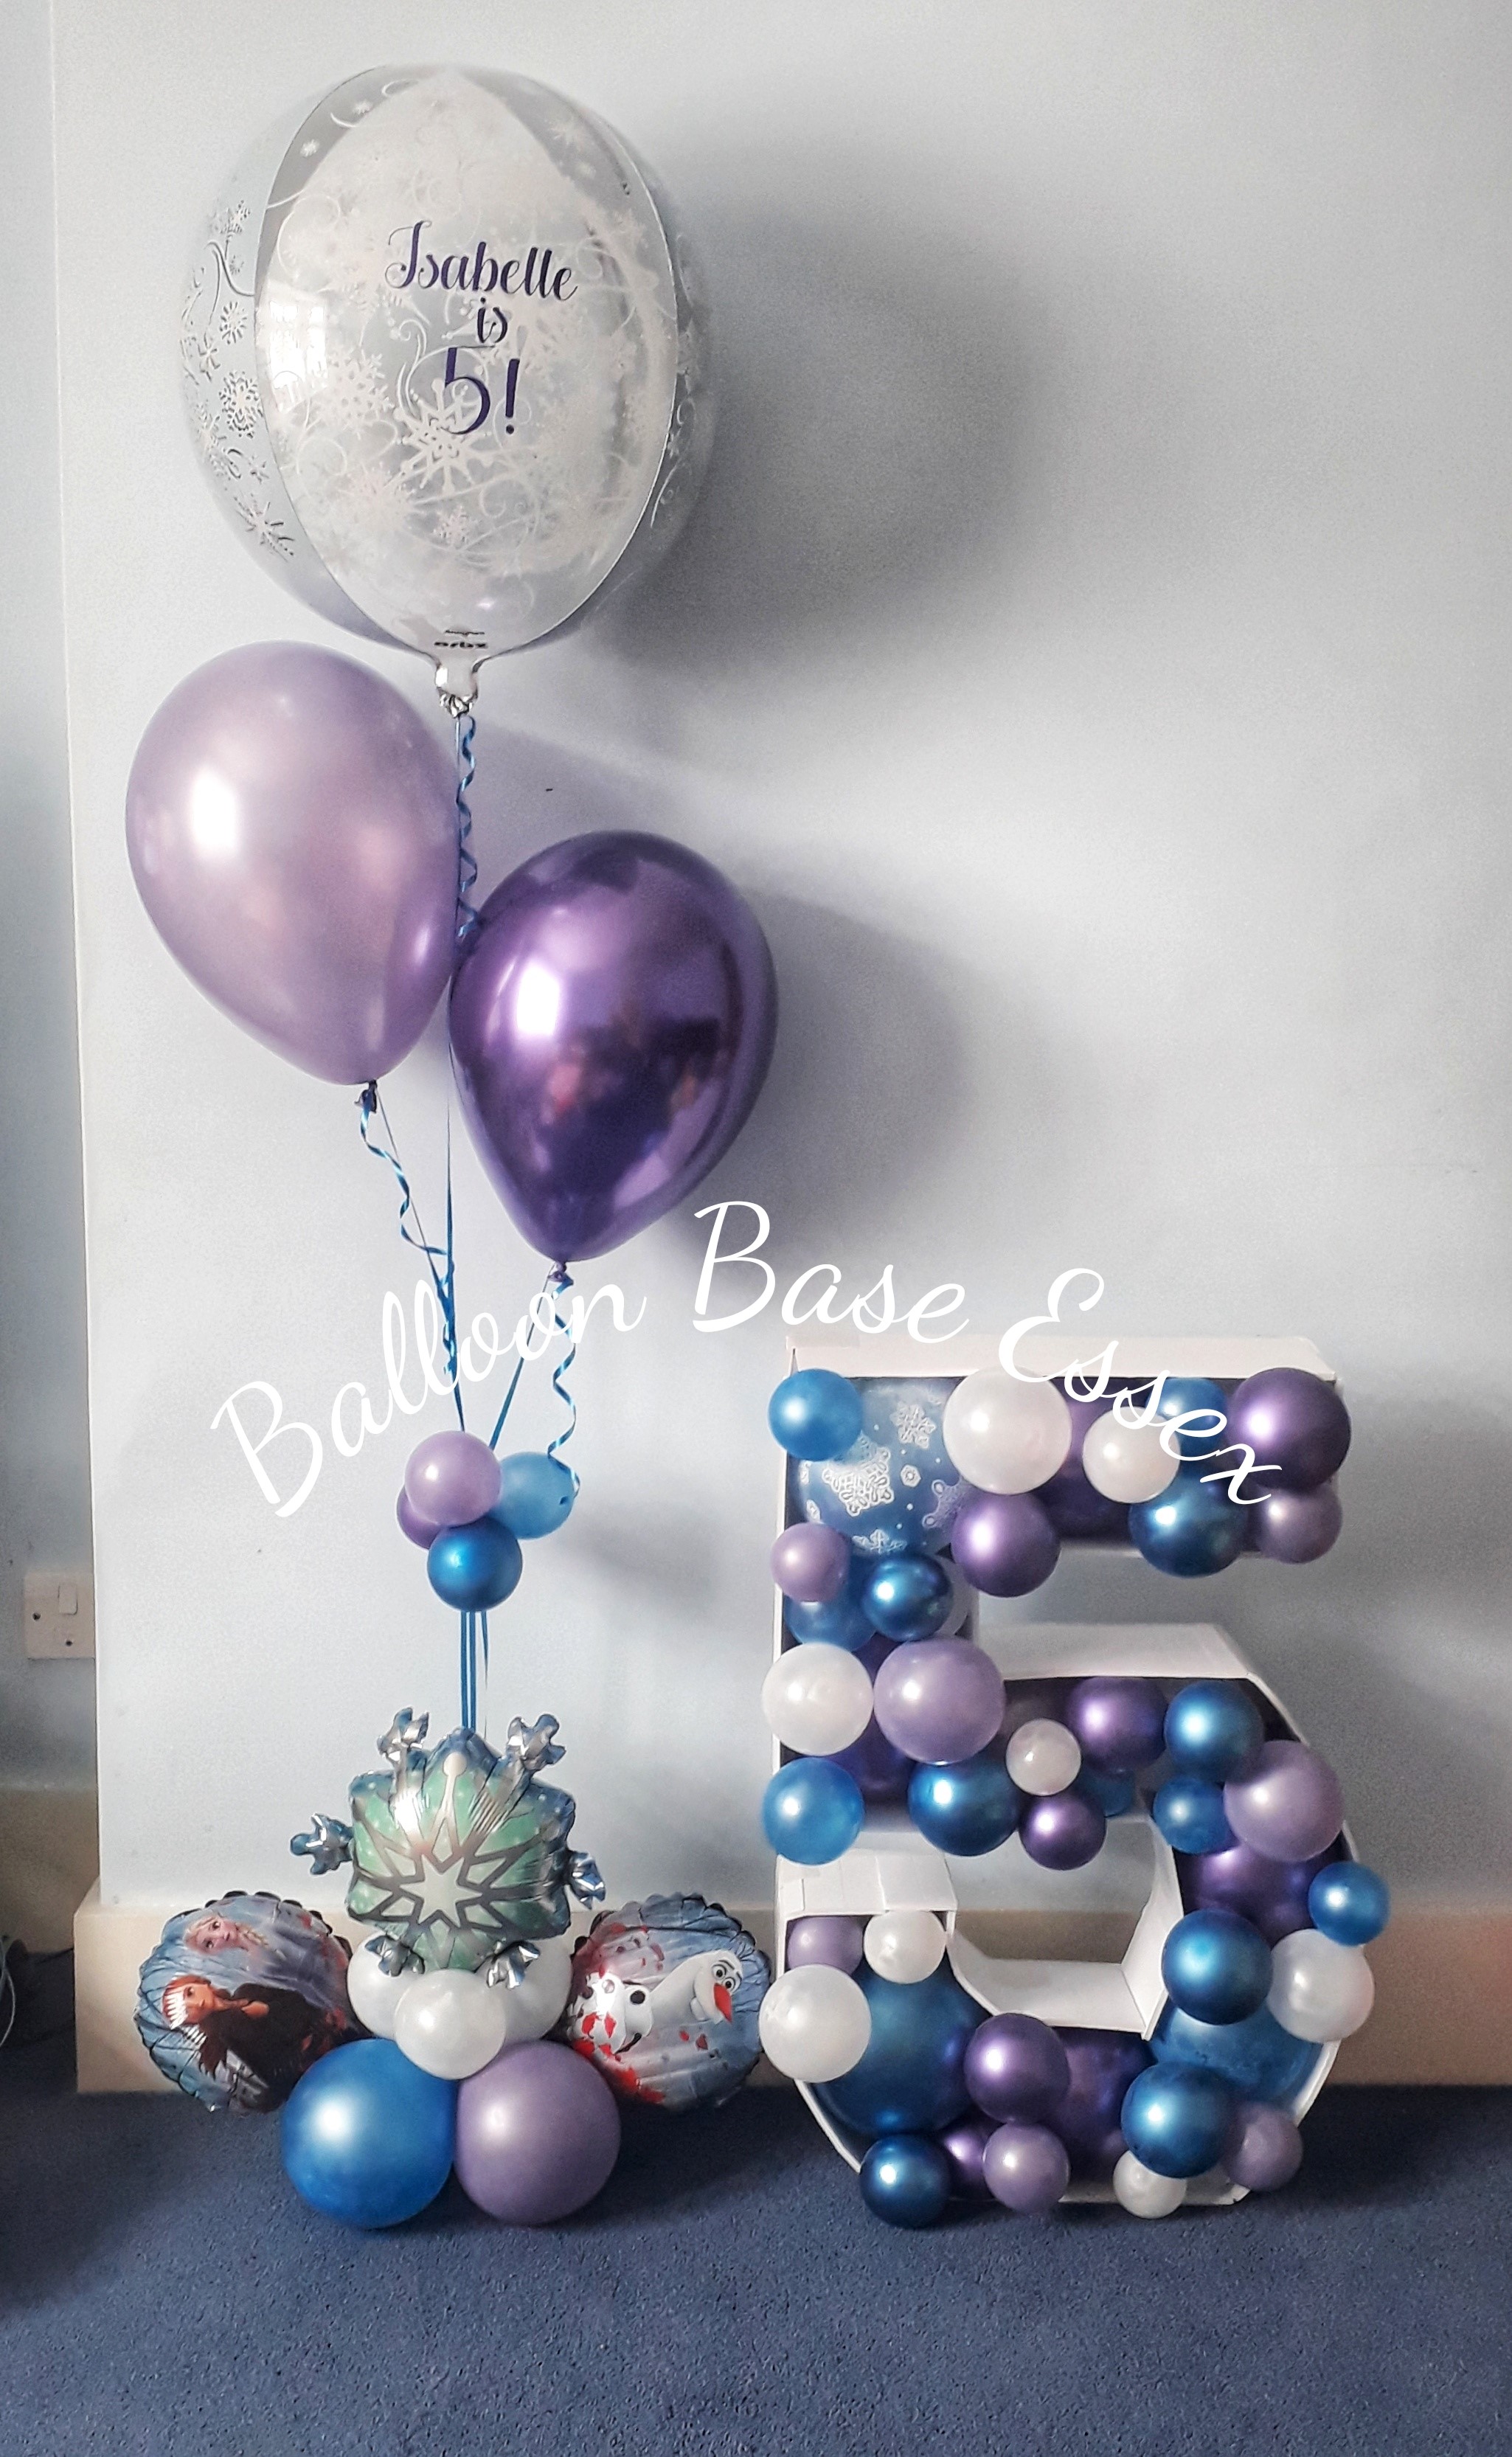 Purple and white snowflake theme balloon bouquet